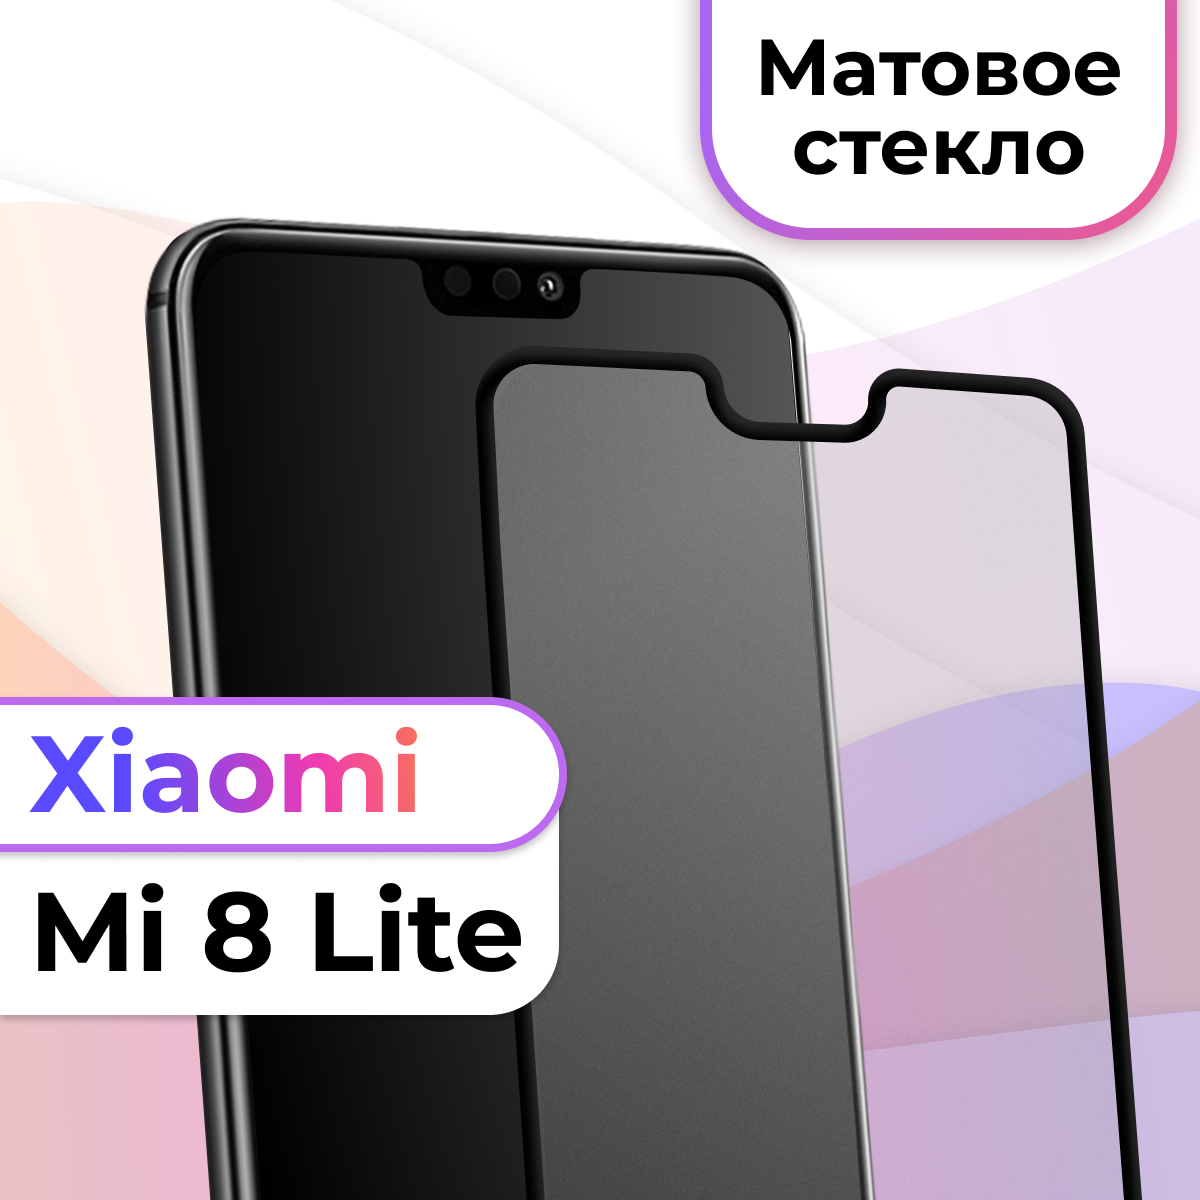 Защитное стекло на телефон Xiaomi Mi 8 Lite / Матовое противоударное стекло на весь экран для смартфона Сяоми Ми 8 Лайт / Бронестекло для телефона